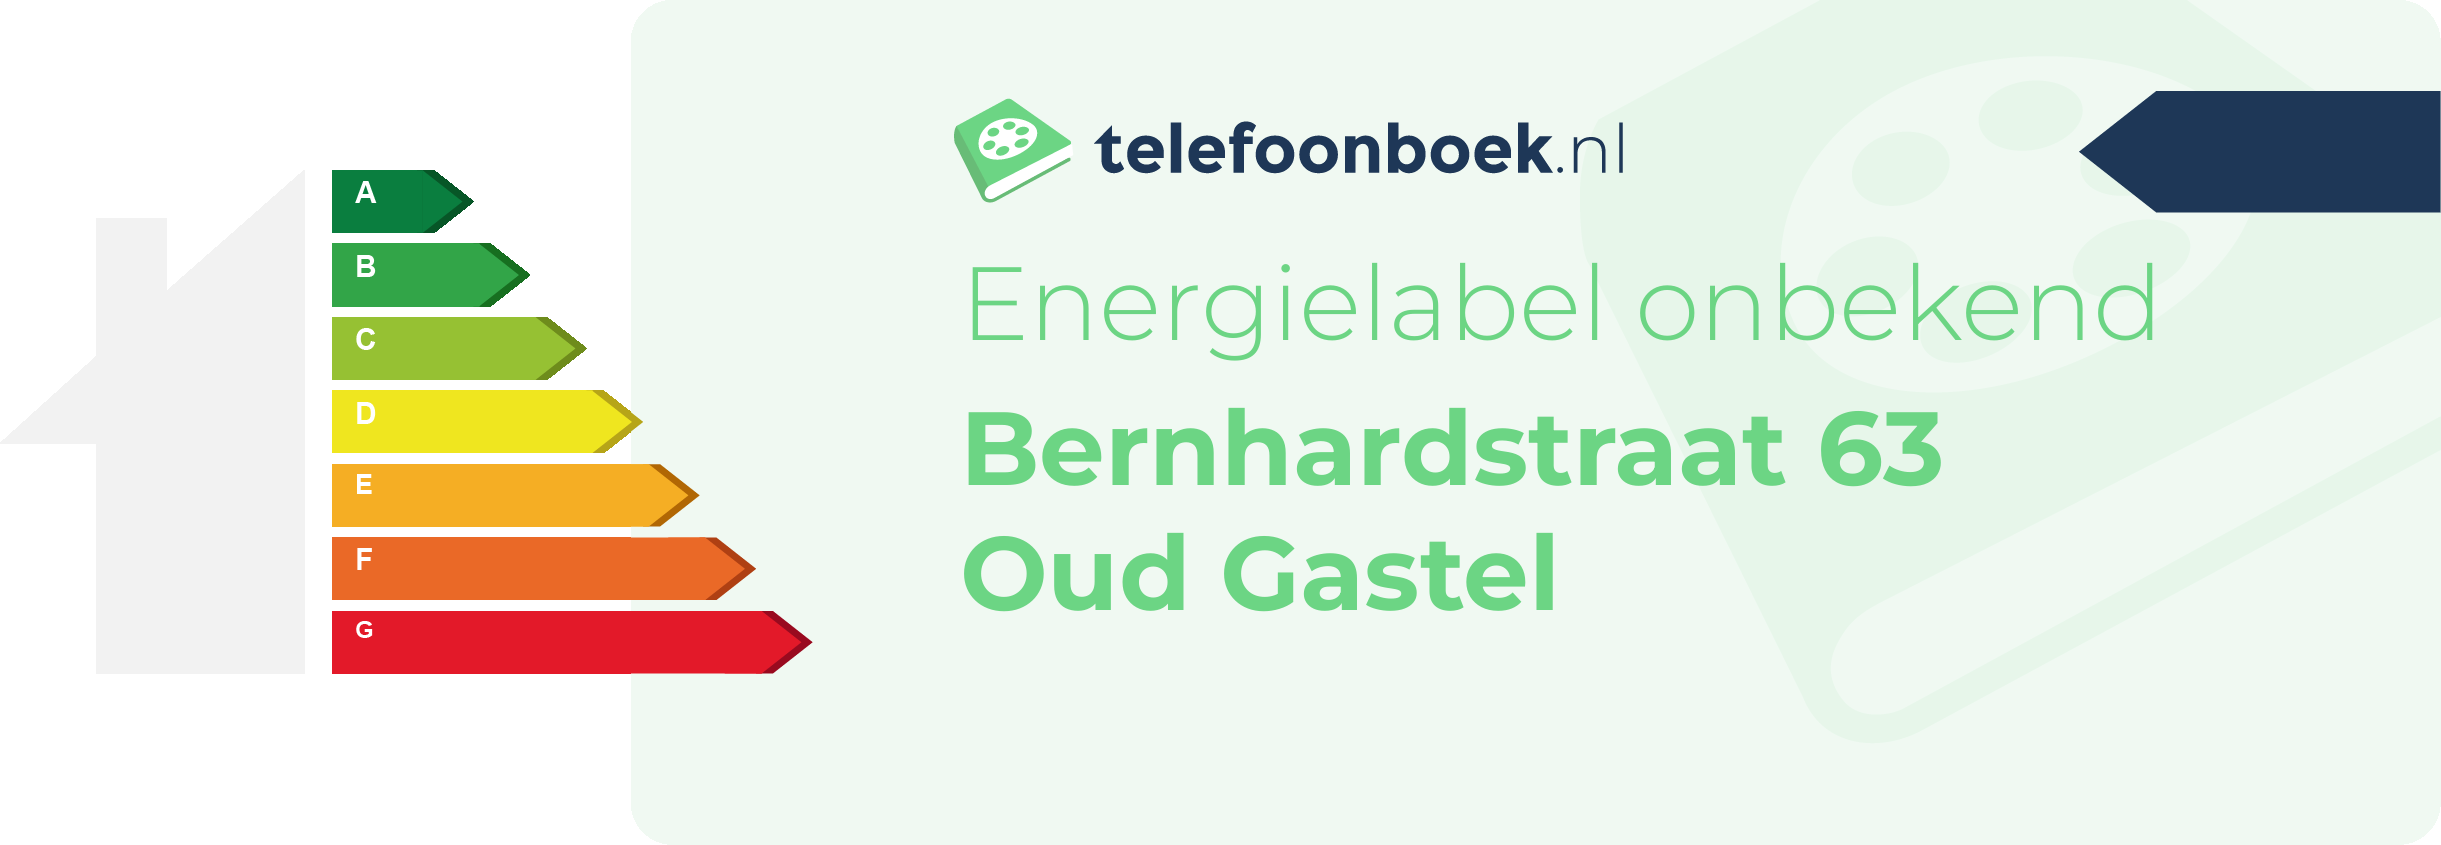 Energielabel Bernhardstraat 63 Oud Gastel